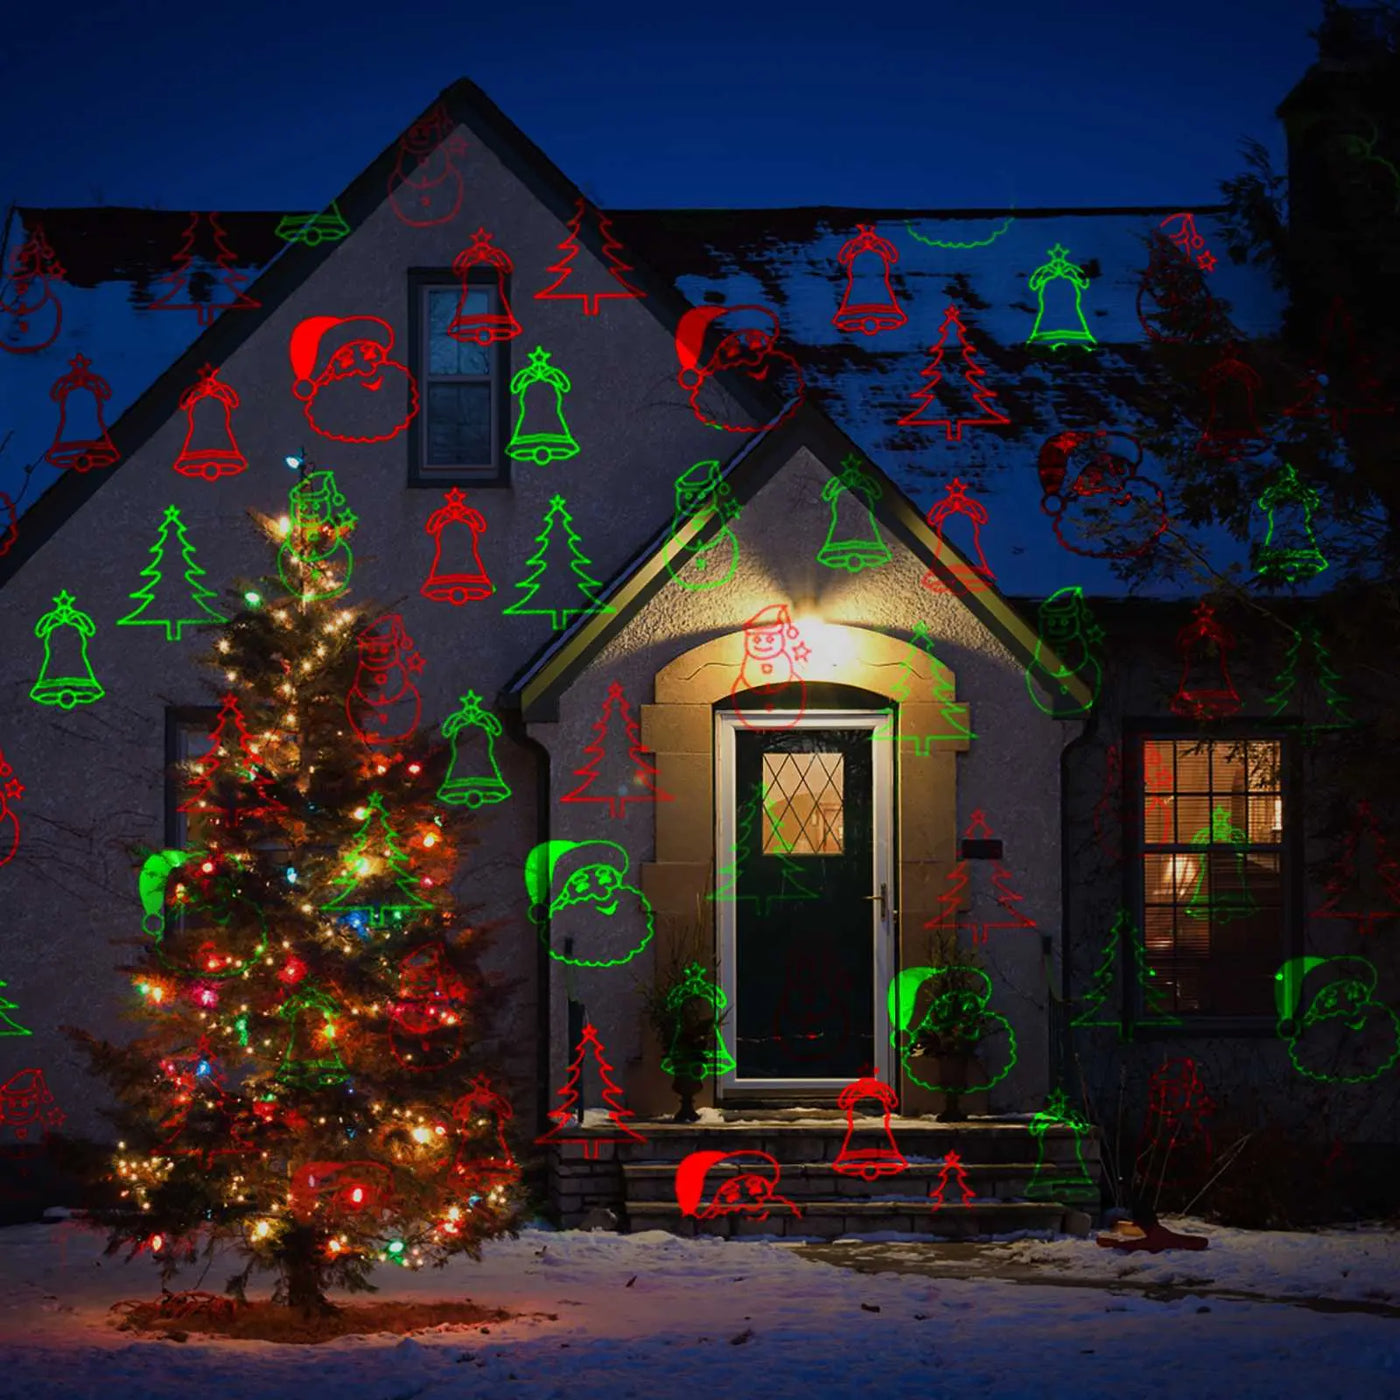 Garden Christmas Projector Lights, Santa Claus, Summer Kswing